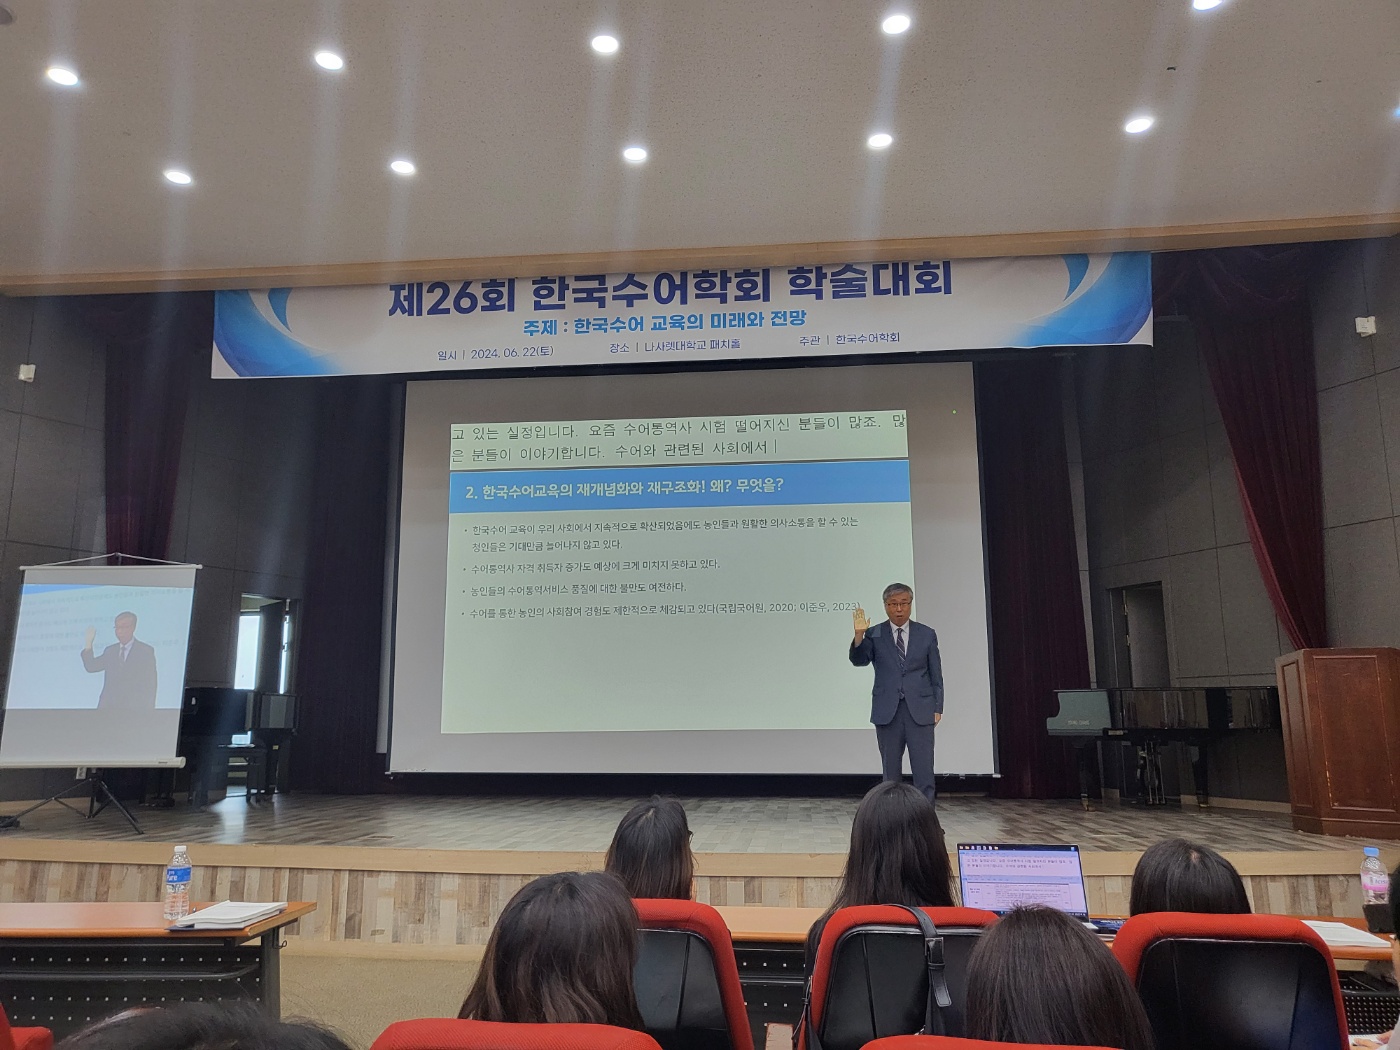 지난 6월 22일 개최된 제26회 한국수어학회 학술대회에서 한국수어교육의 성찰적 재개념화와 재구조화를 주제로 이준우 교수가 기조강연을 하고 있다.